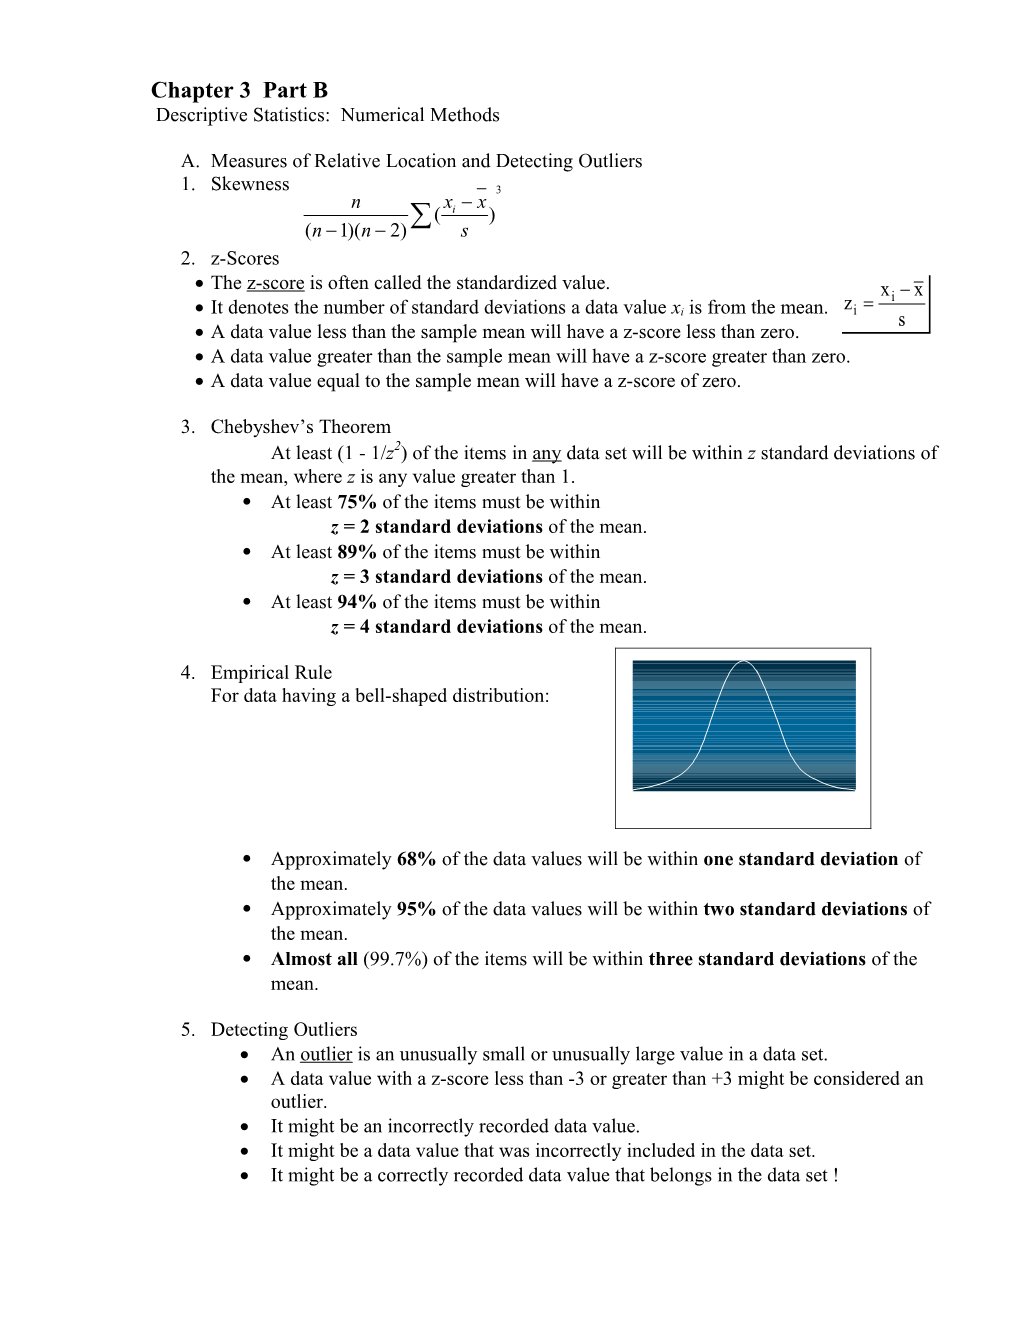 Chapter 3 Part B Descriptive Statistics: Numerical Methods